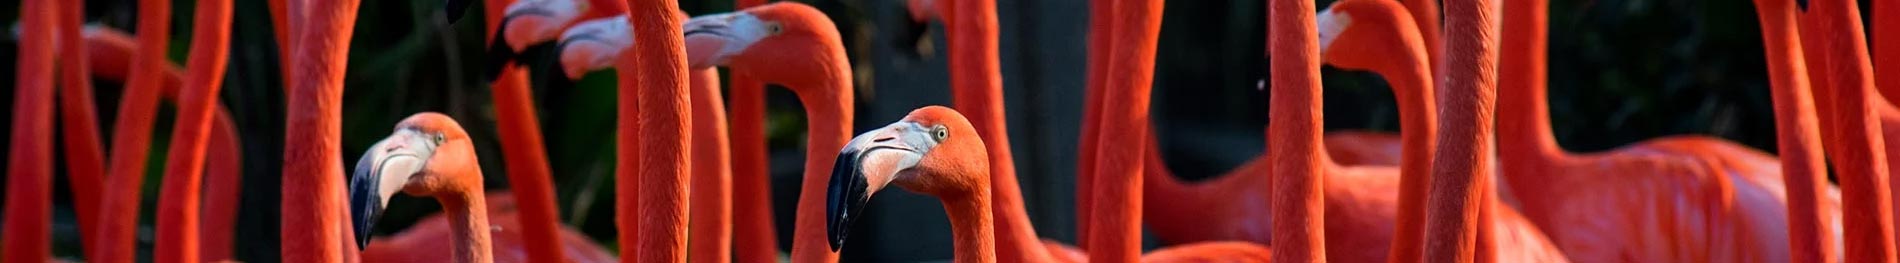 Flamingo Up-Close Encounter